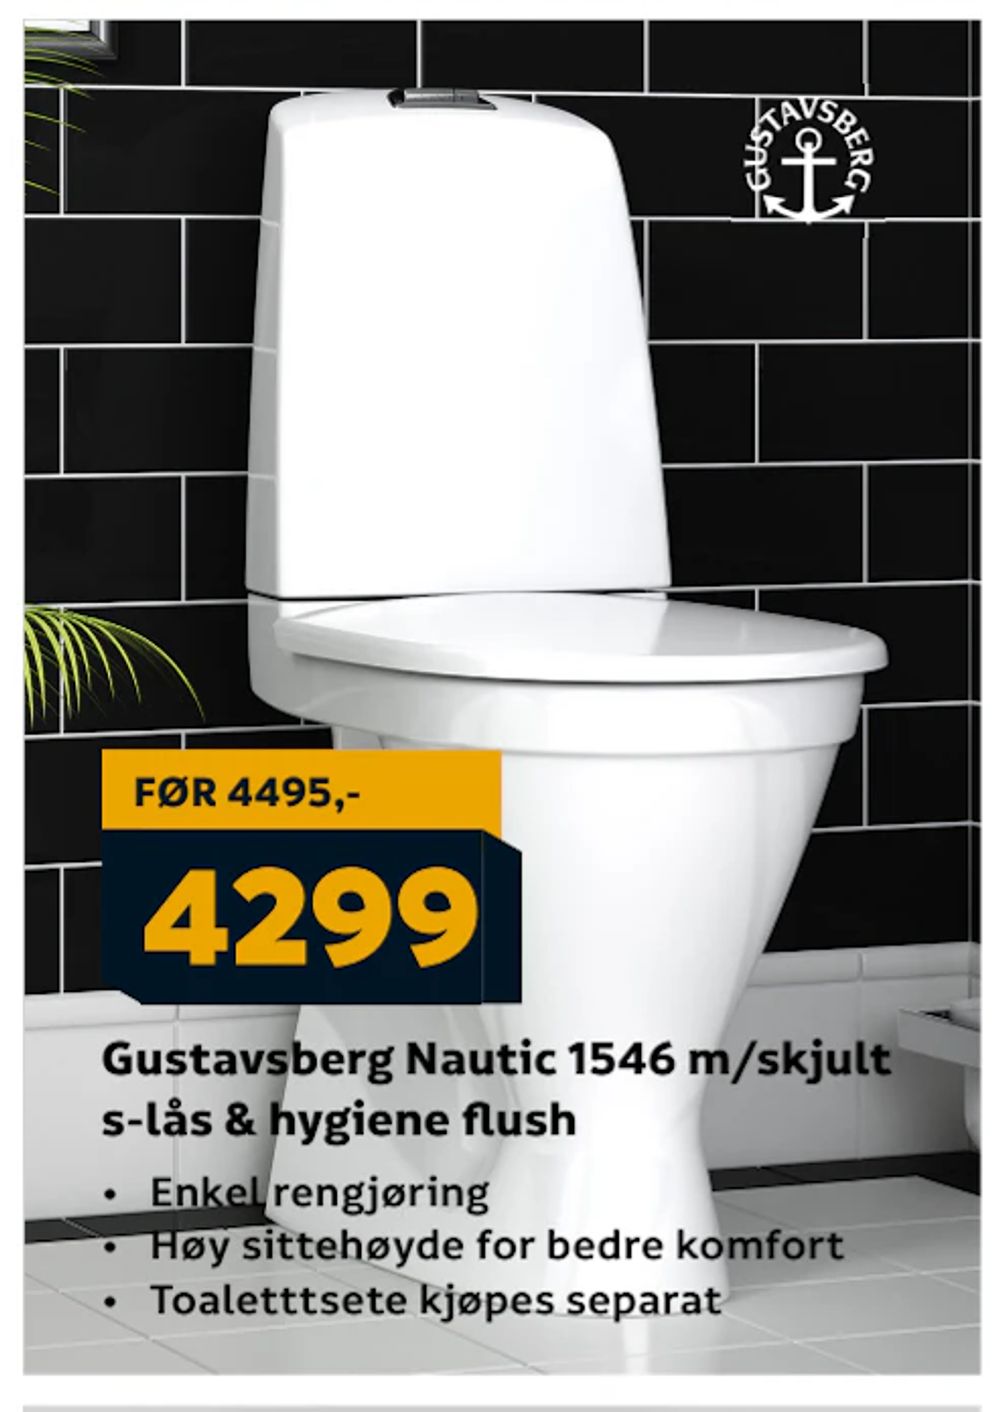 Tilbud på Gustavsberg Nautic 1546 m/skjult s-lås & hygiene flush fra Megaflis til 4 299 kr